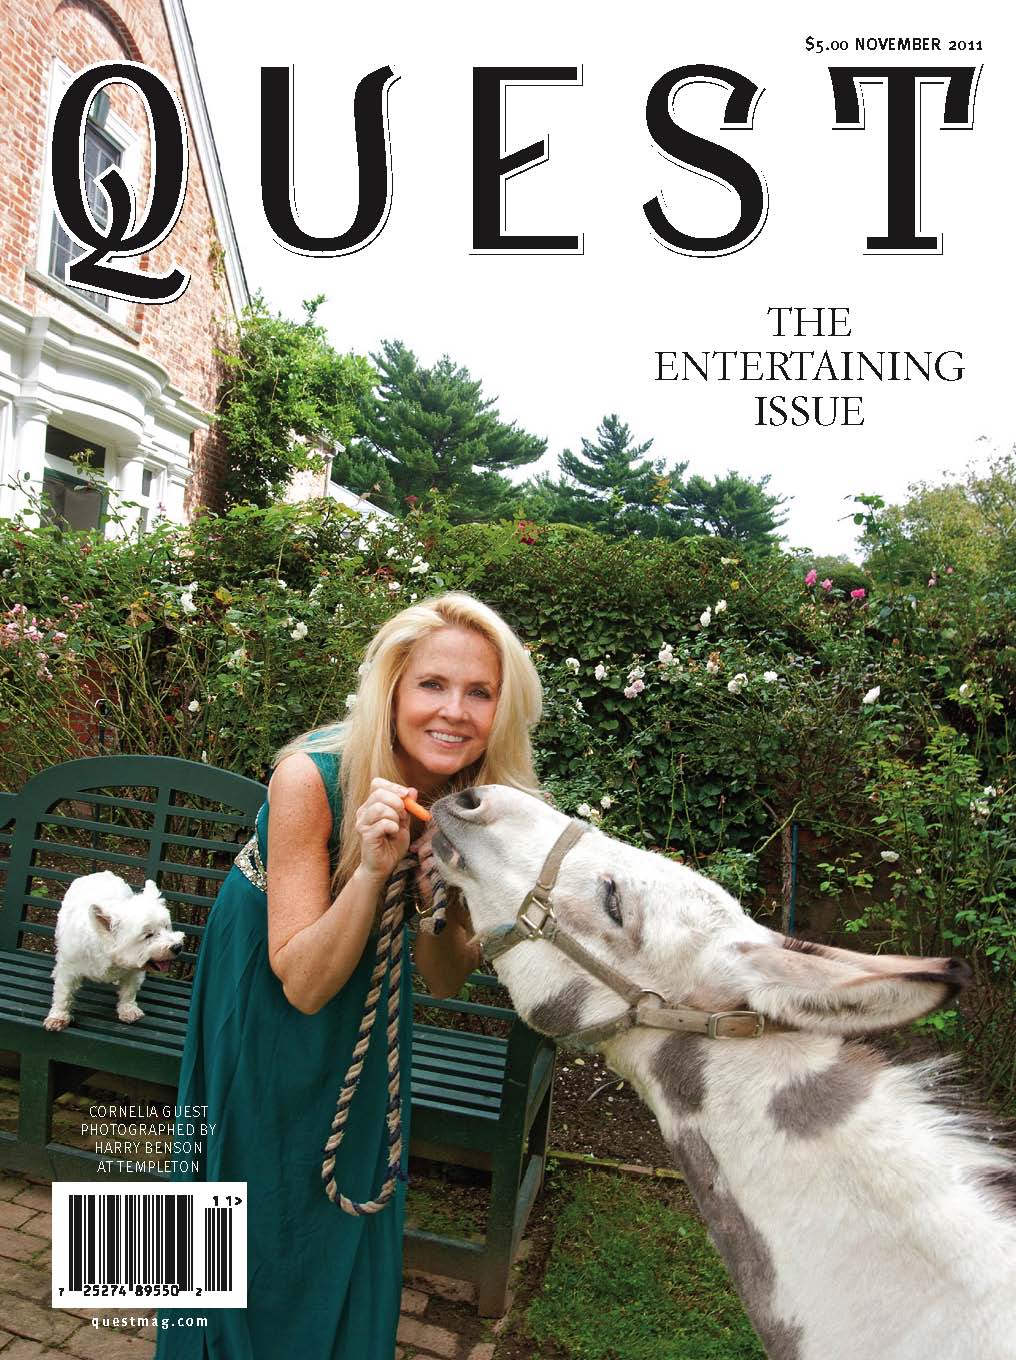 MSKCC in Quest Magazine